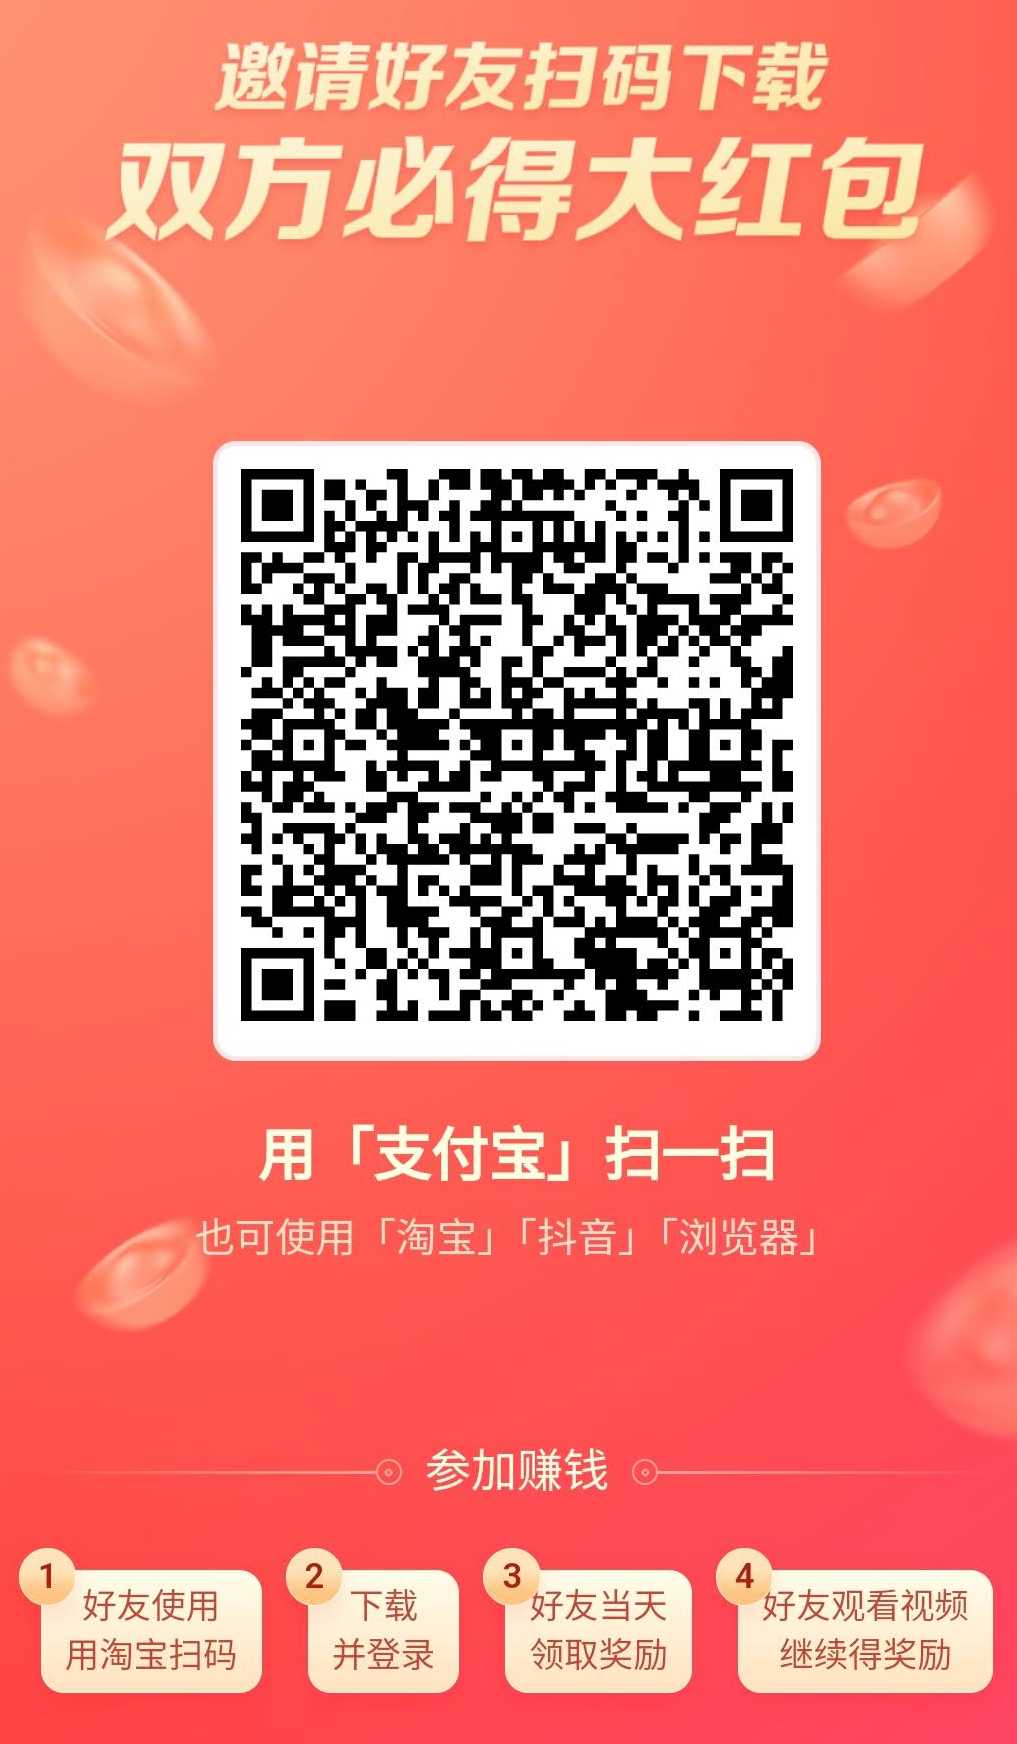 როგორ დარეგისტრირდეთ Douyin Express Edition ჩინური ვირტუალური მობილური ტელეფონის ნომრის გამოყენებით?ნაბიჯ ნაბიჯ სამეურვეო ანალიზი